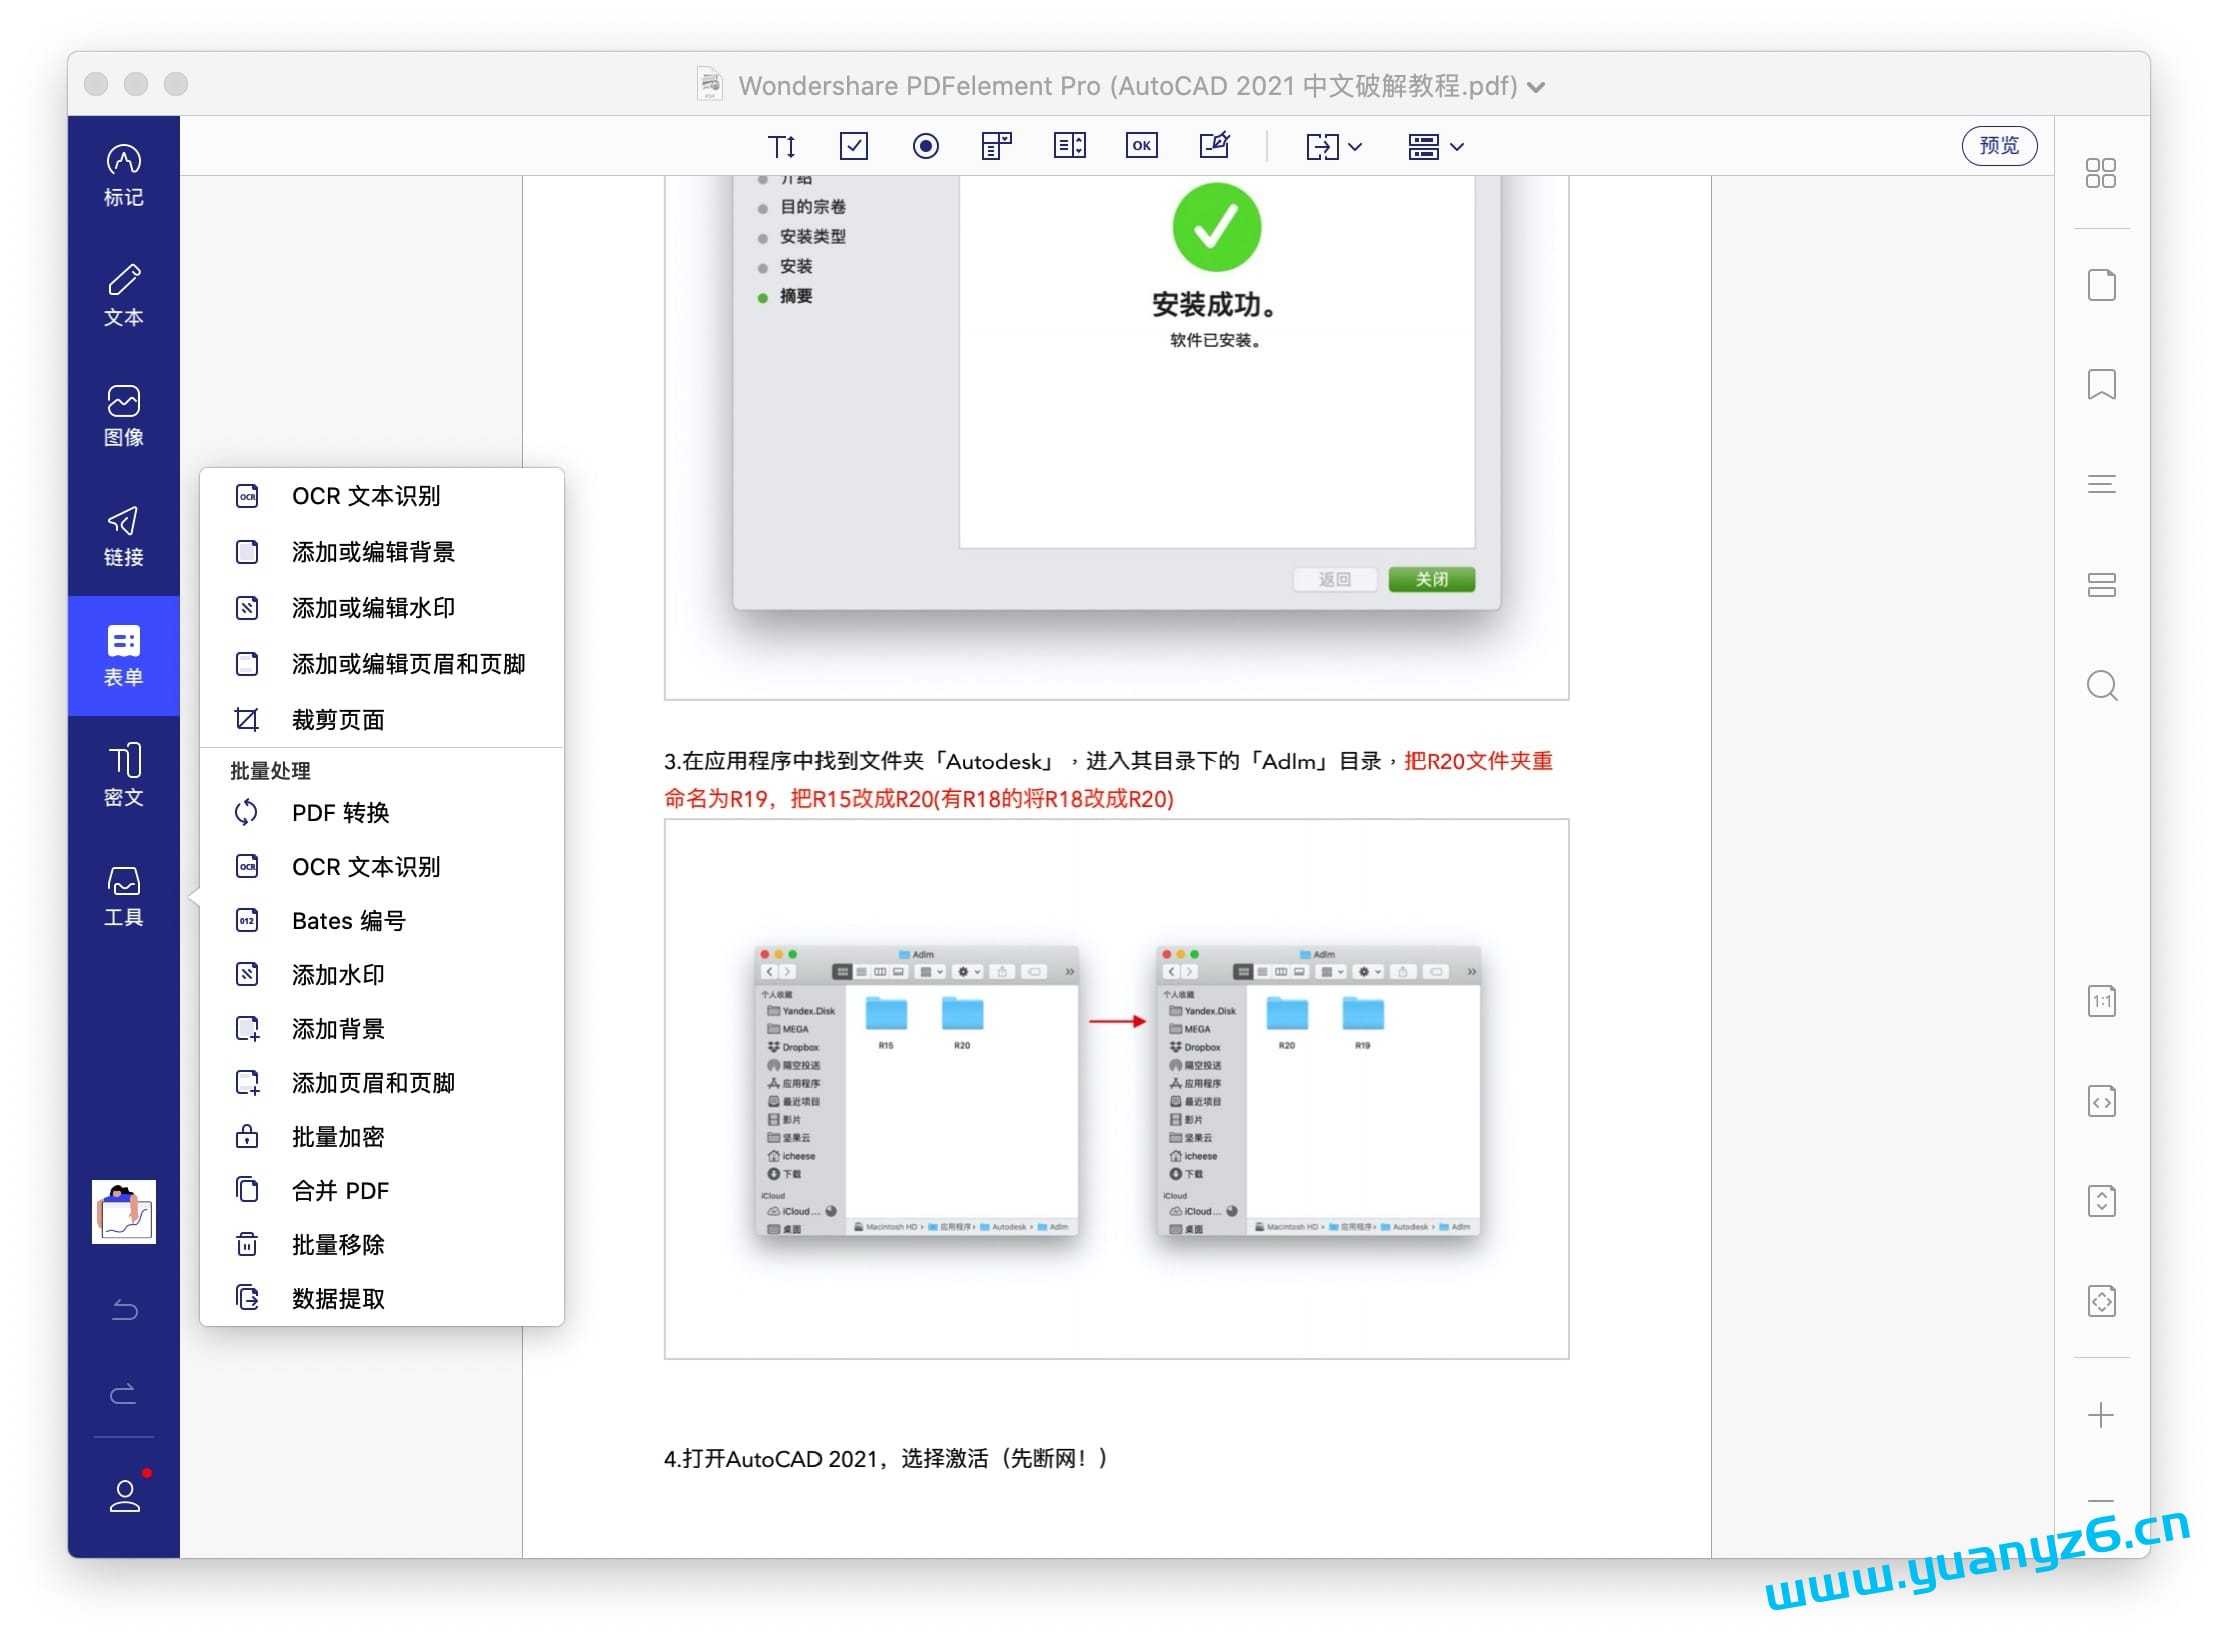 Wondershare PDFelement for Mac v10.3.5 (OCR) 中文破解版 强大的PDF编辑工具 苹果电脑